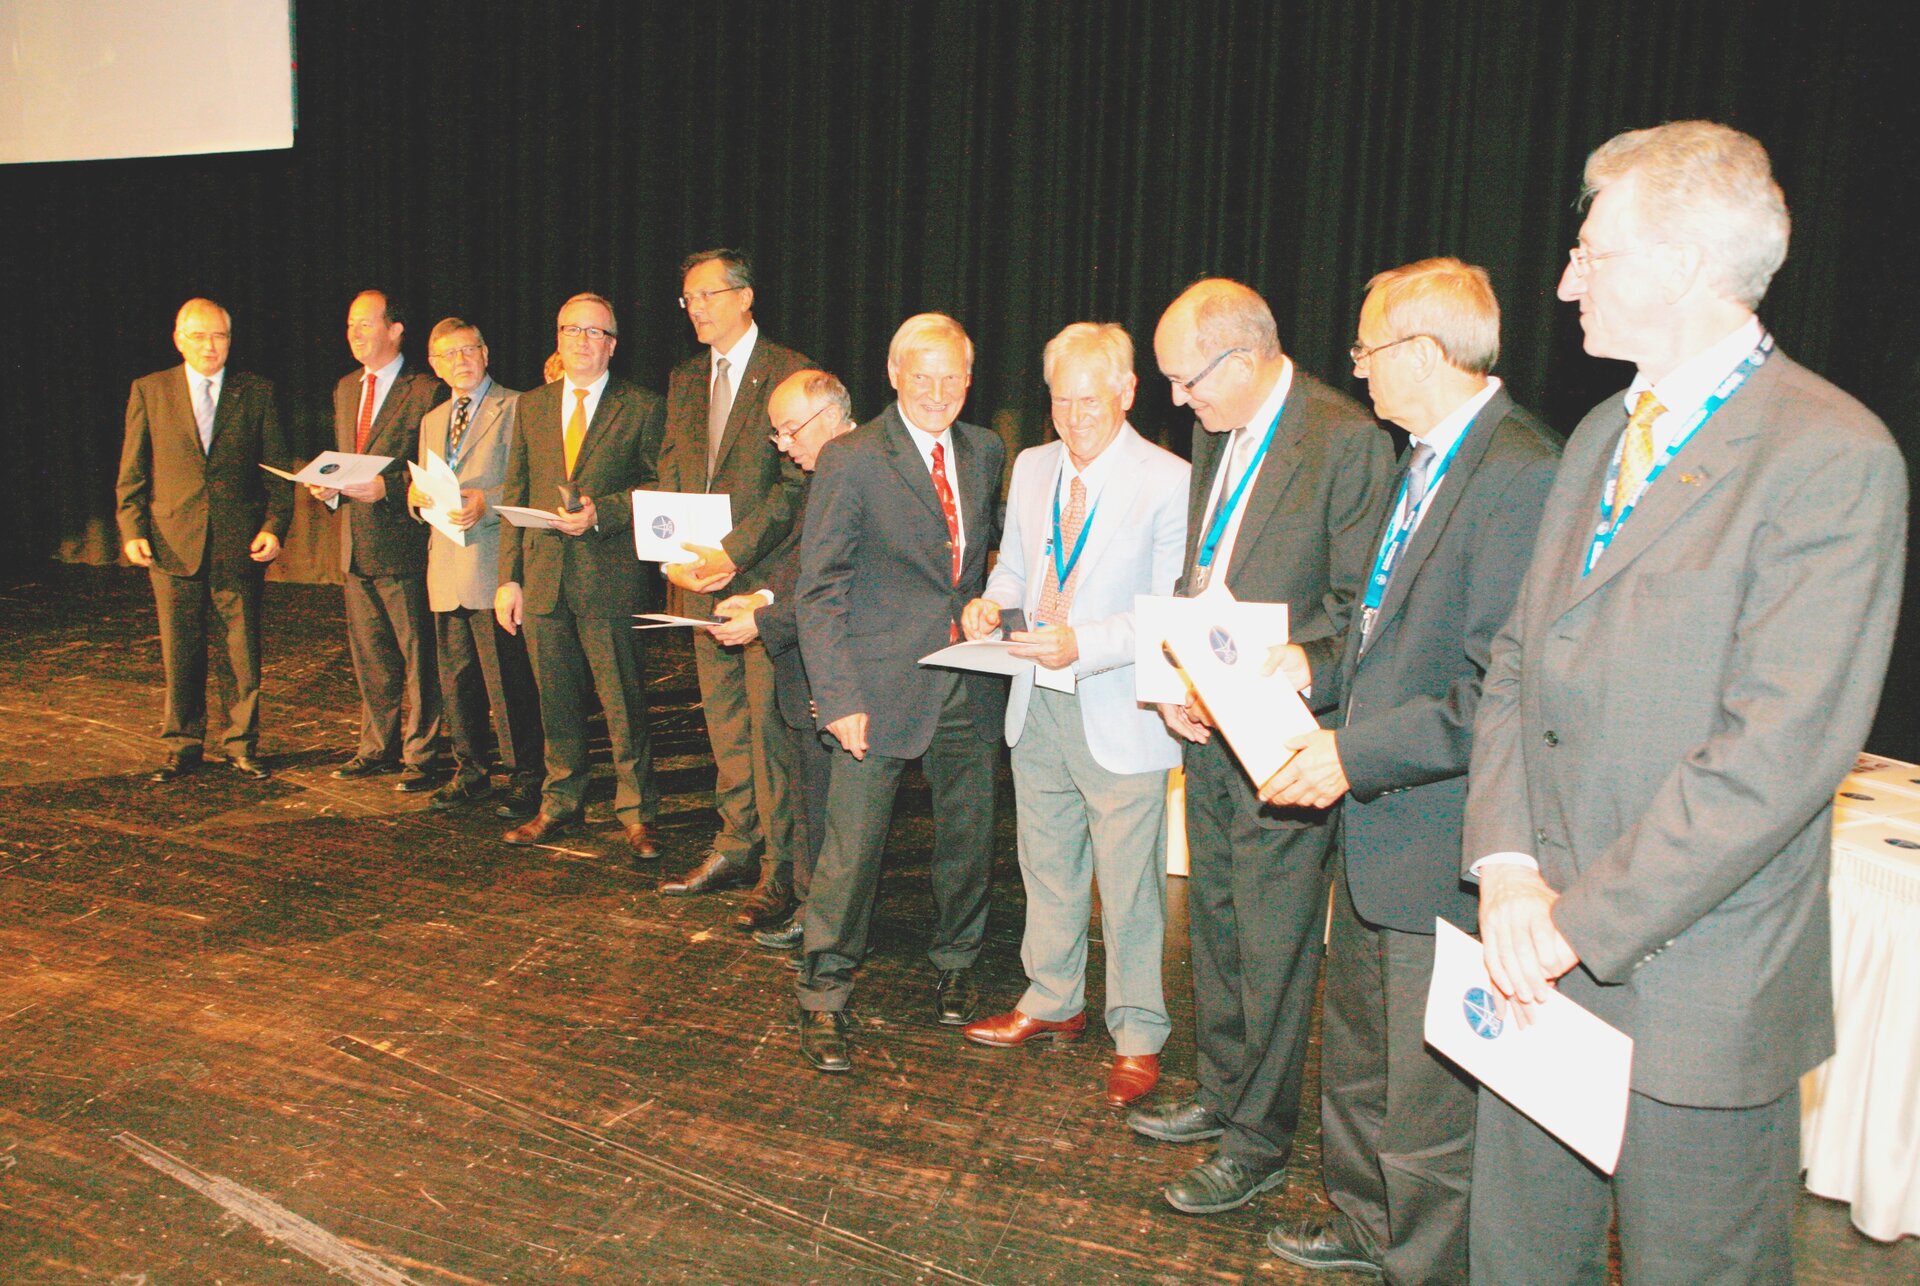 Verleihung des Wernher-von-Braun-Preises 2011 an das ATV-Entwicklungsteam der ESA